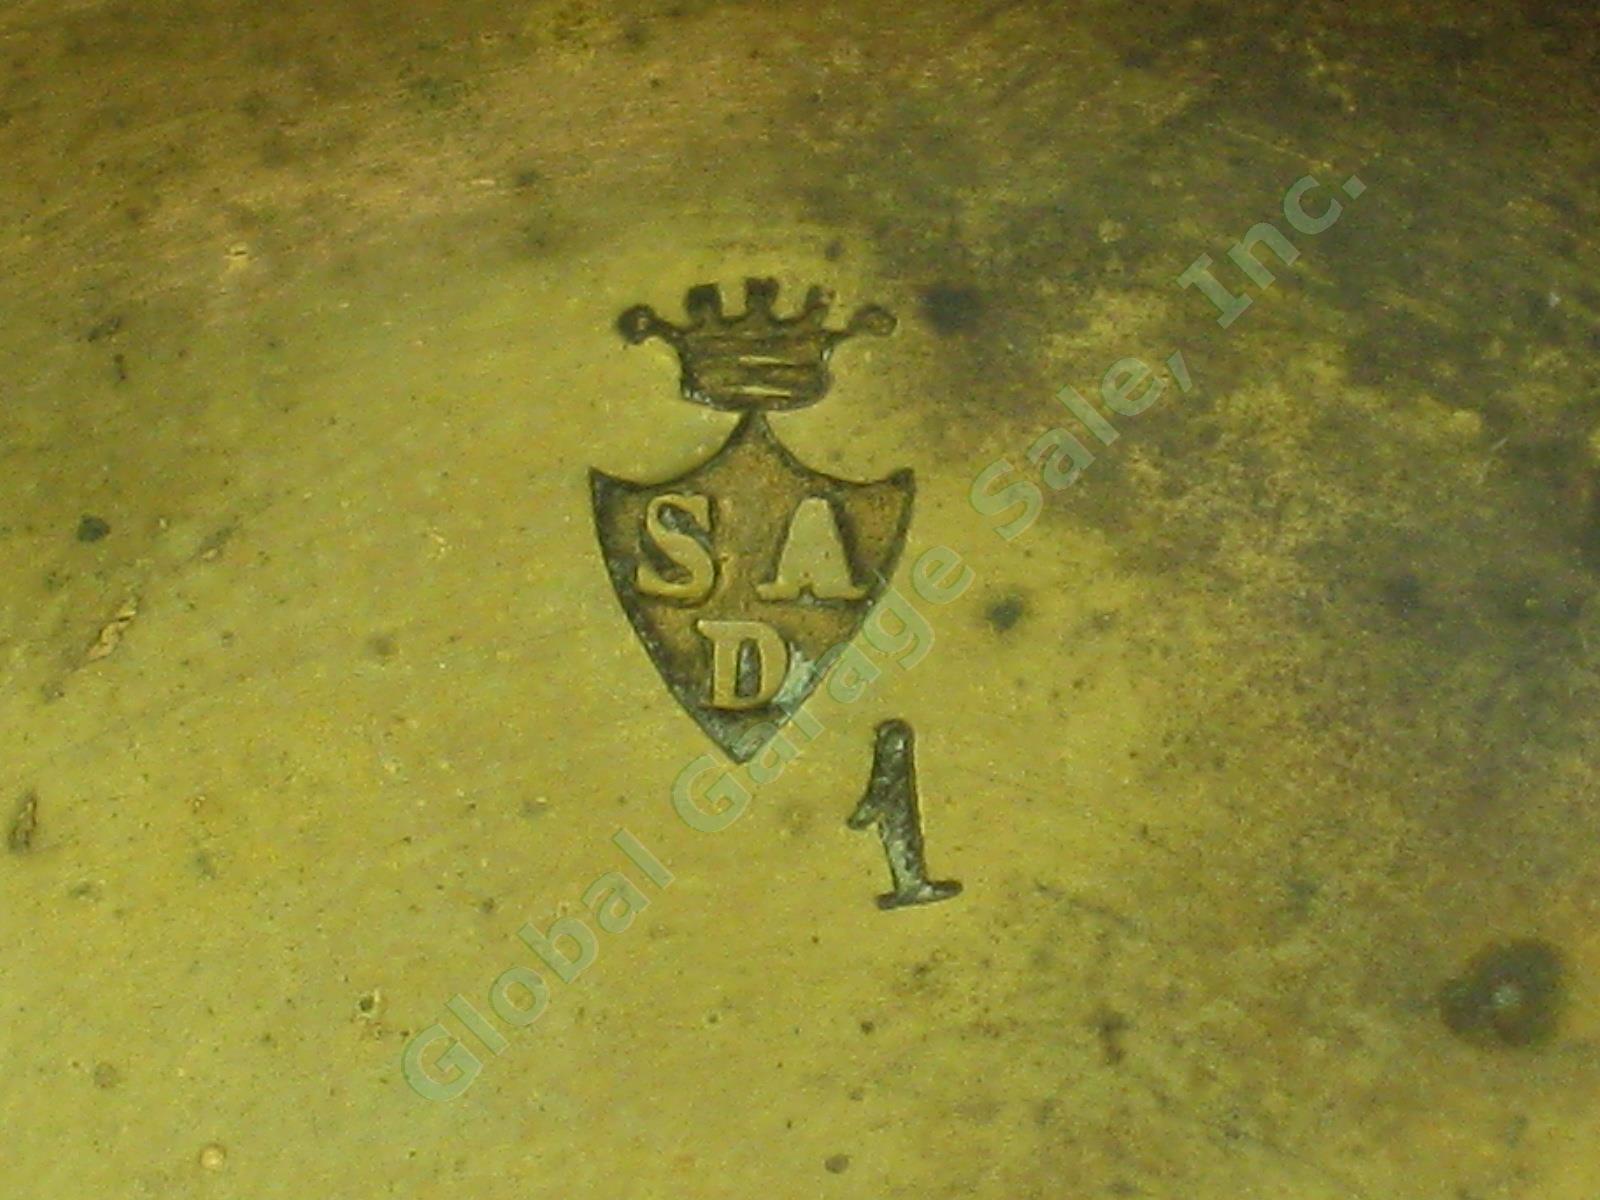 Unknown Vtg Antique Brass Key Wind Pocket Watch W/ SAD Crown Shield Mark Stamp 4